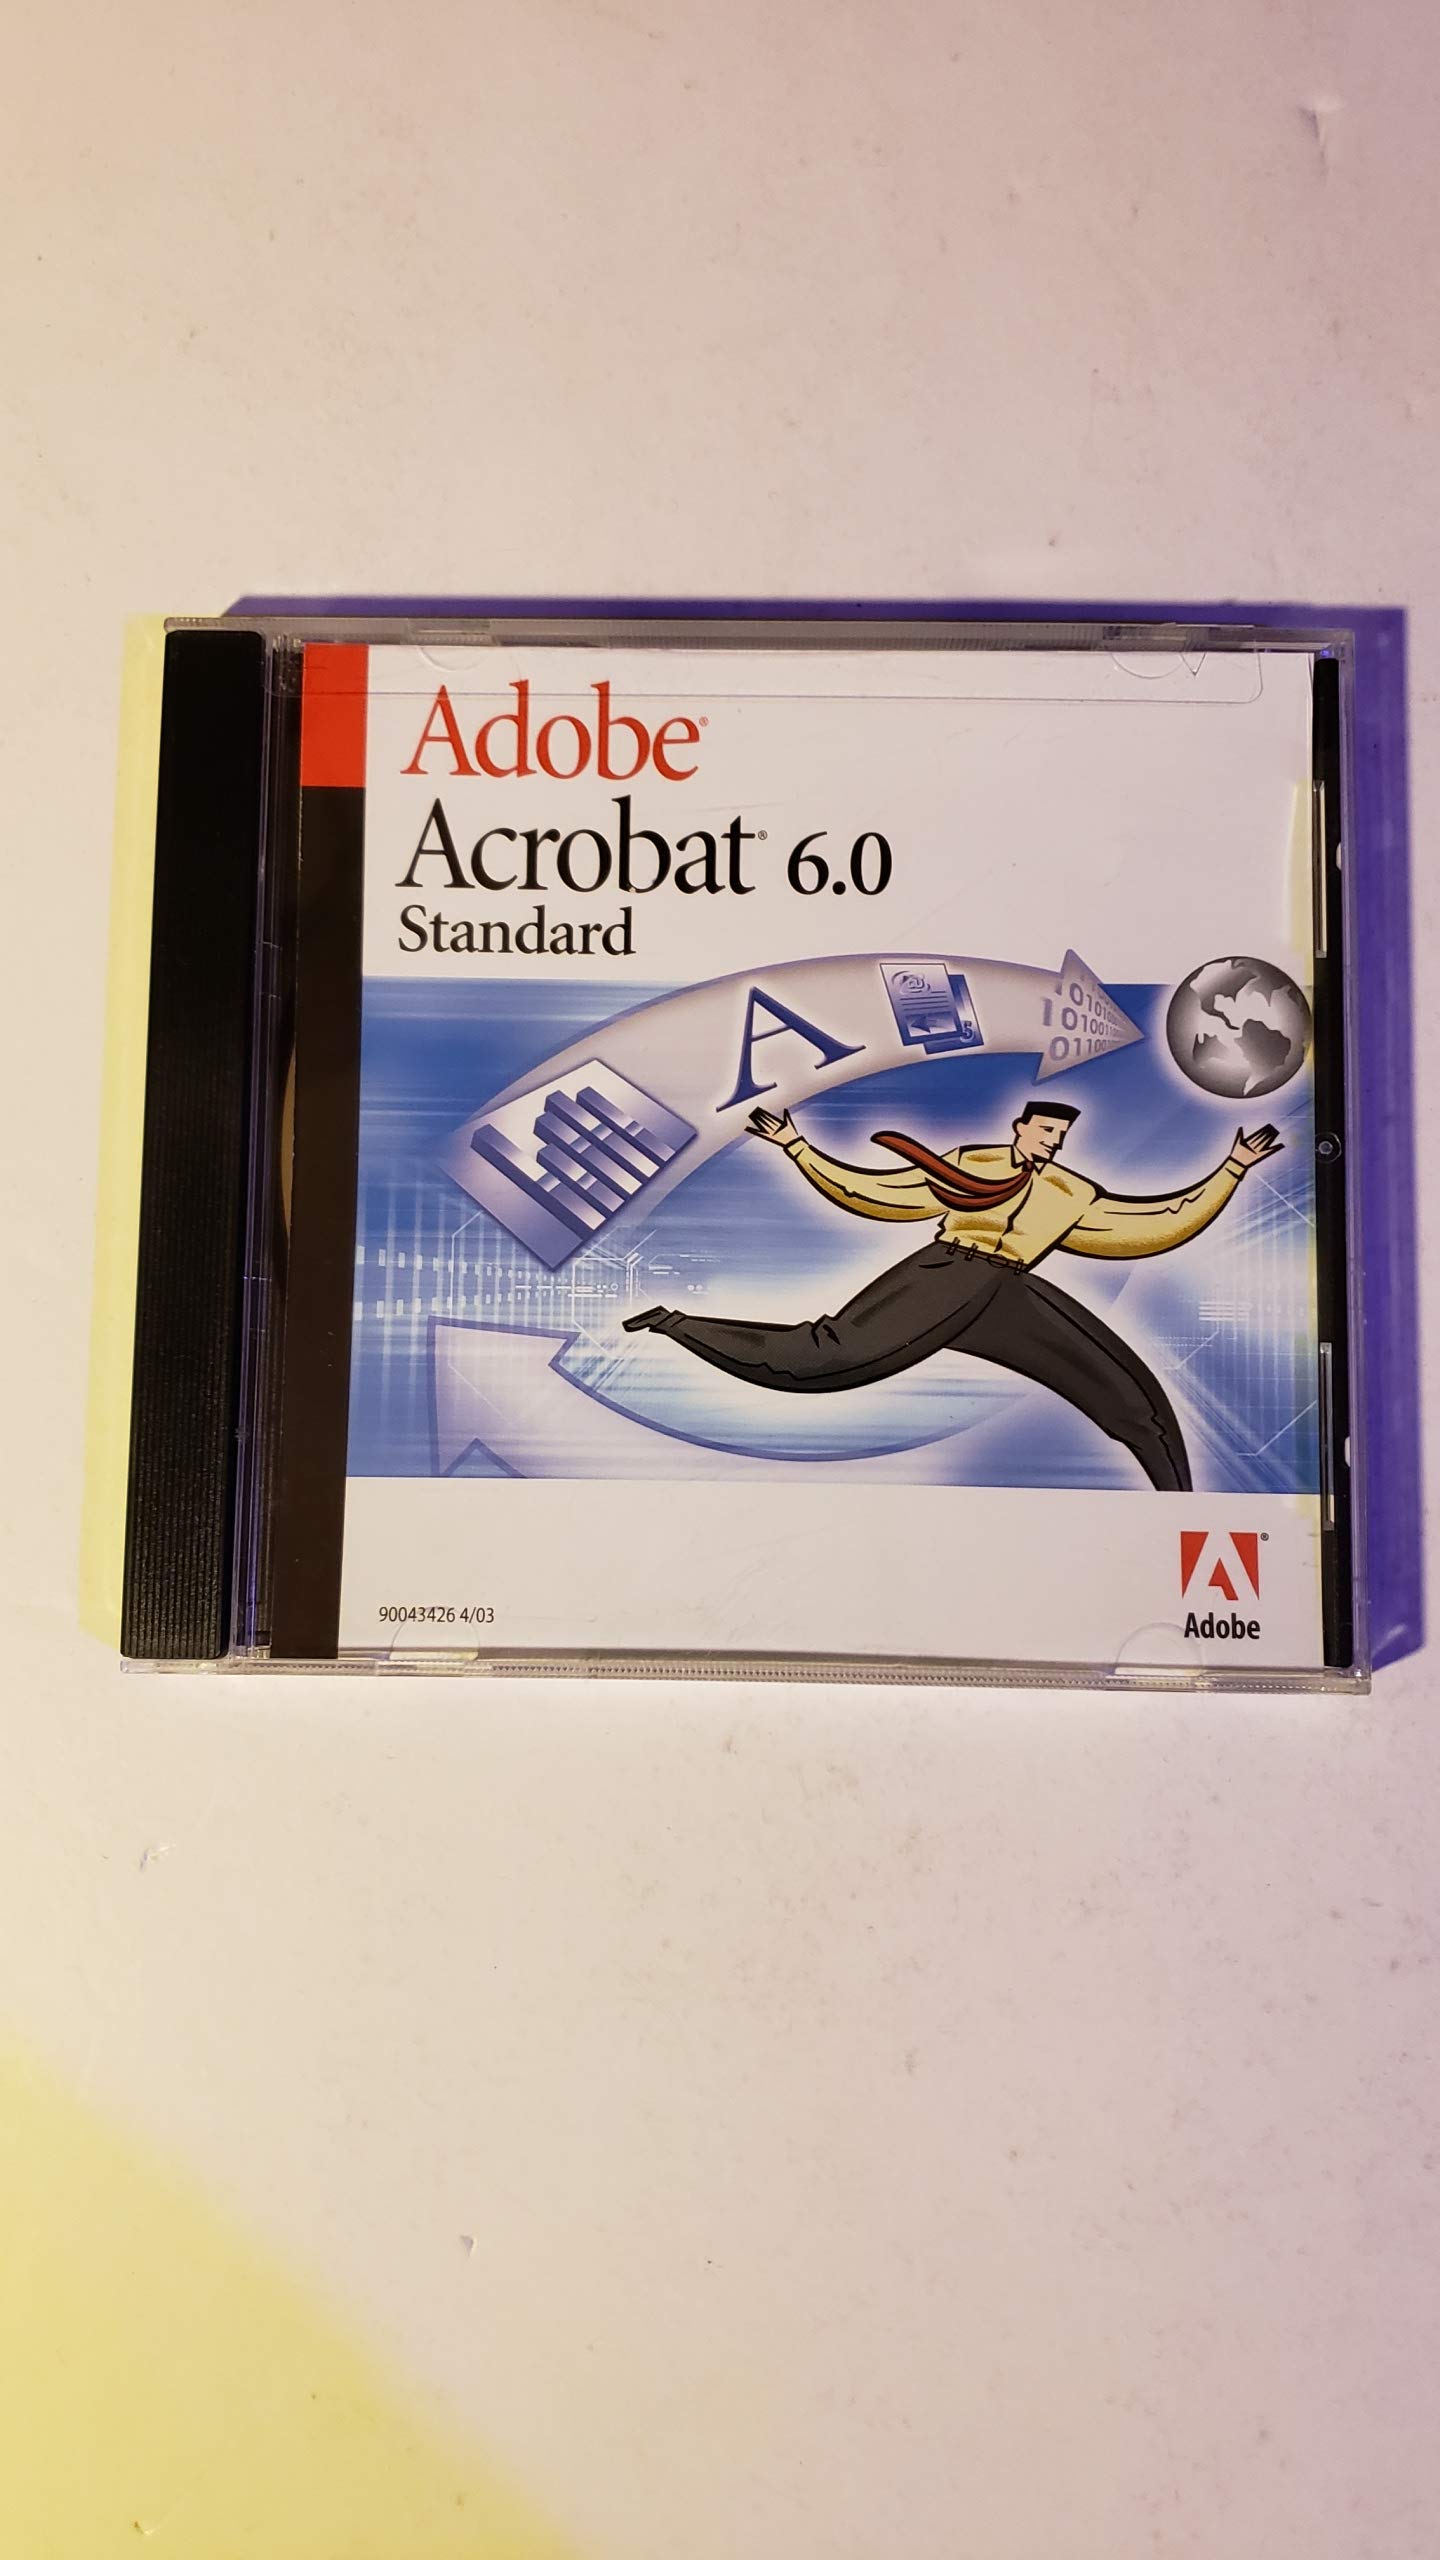 adobe acrobat 6.0 standard download free